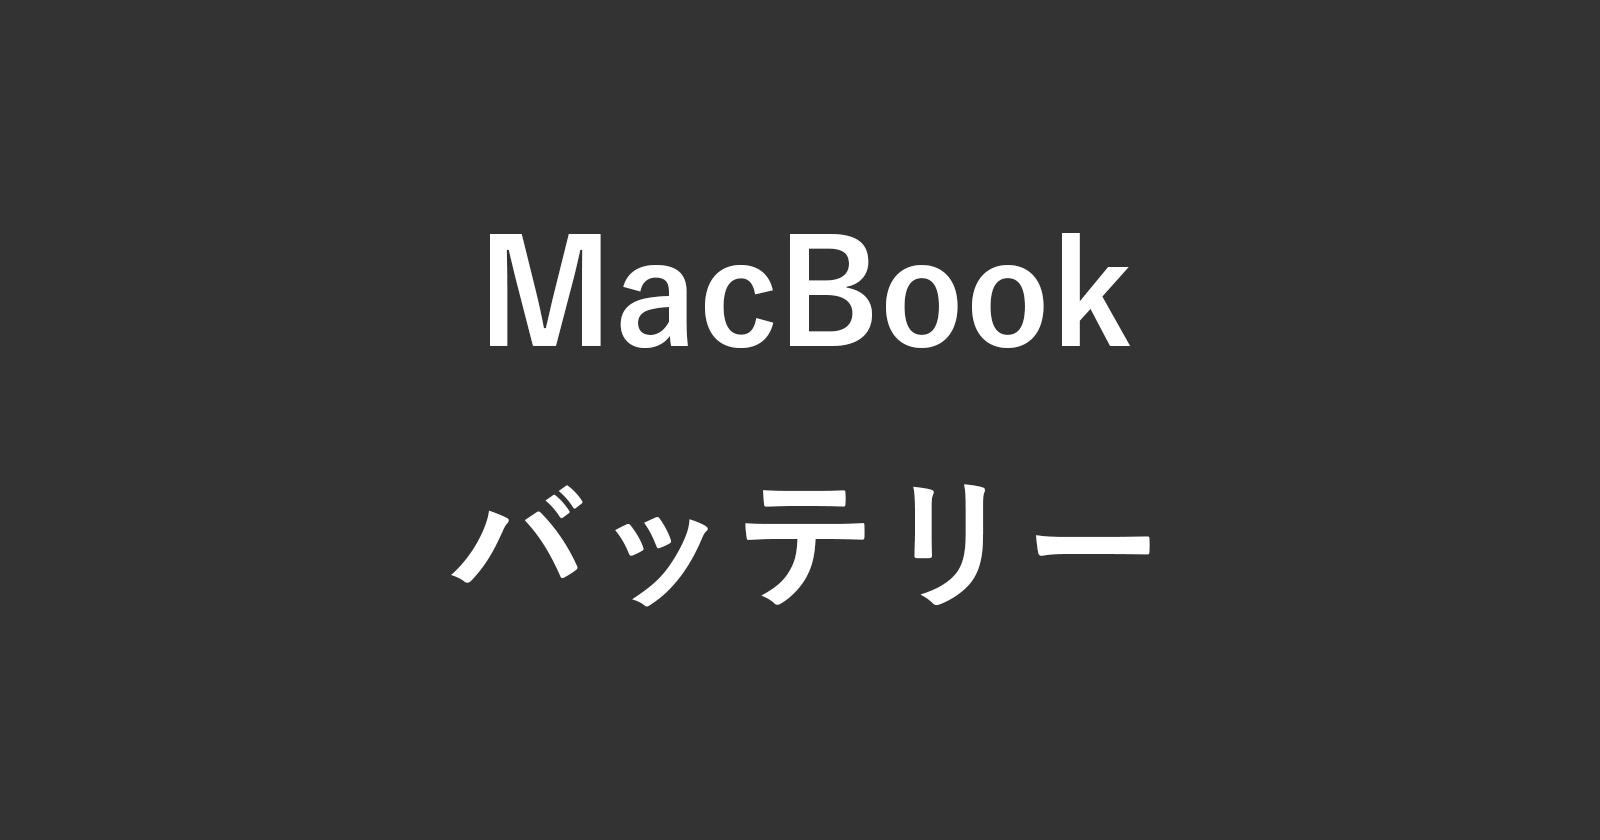 macbook buttery